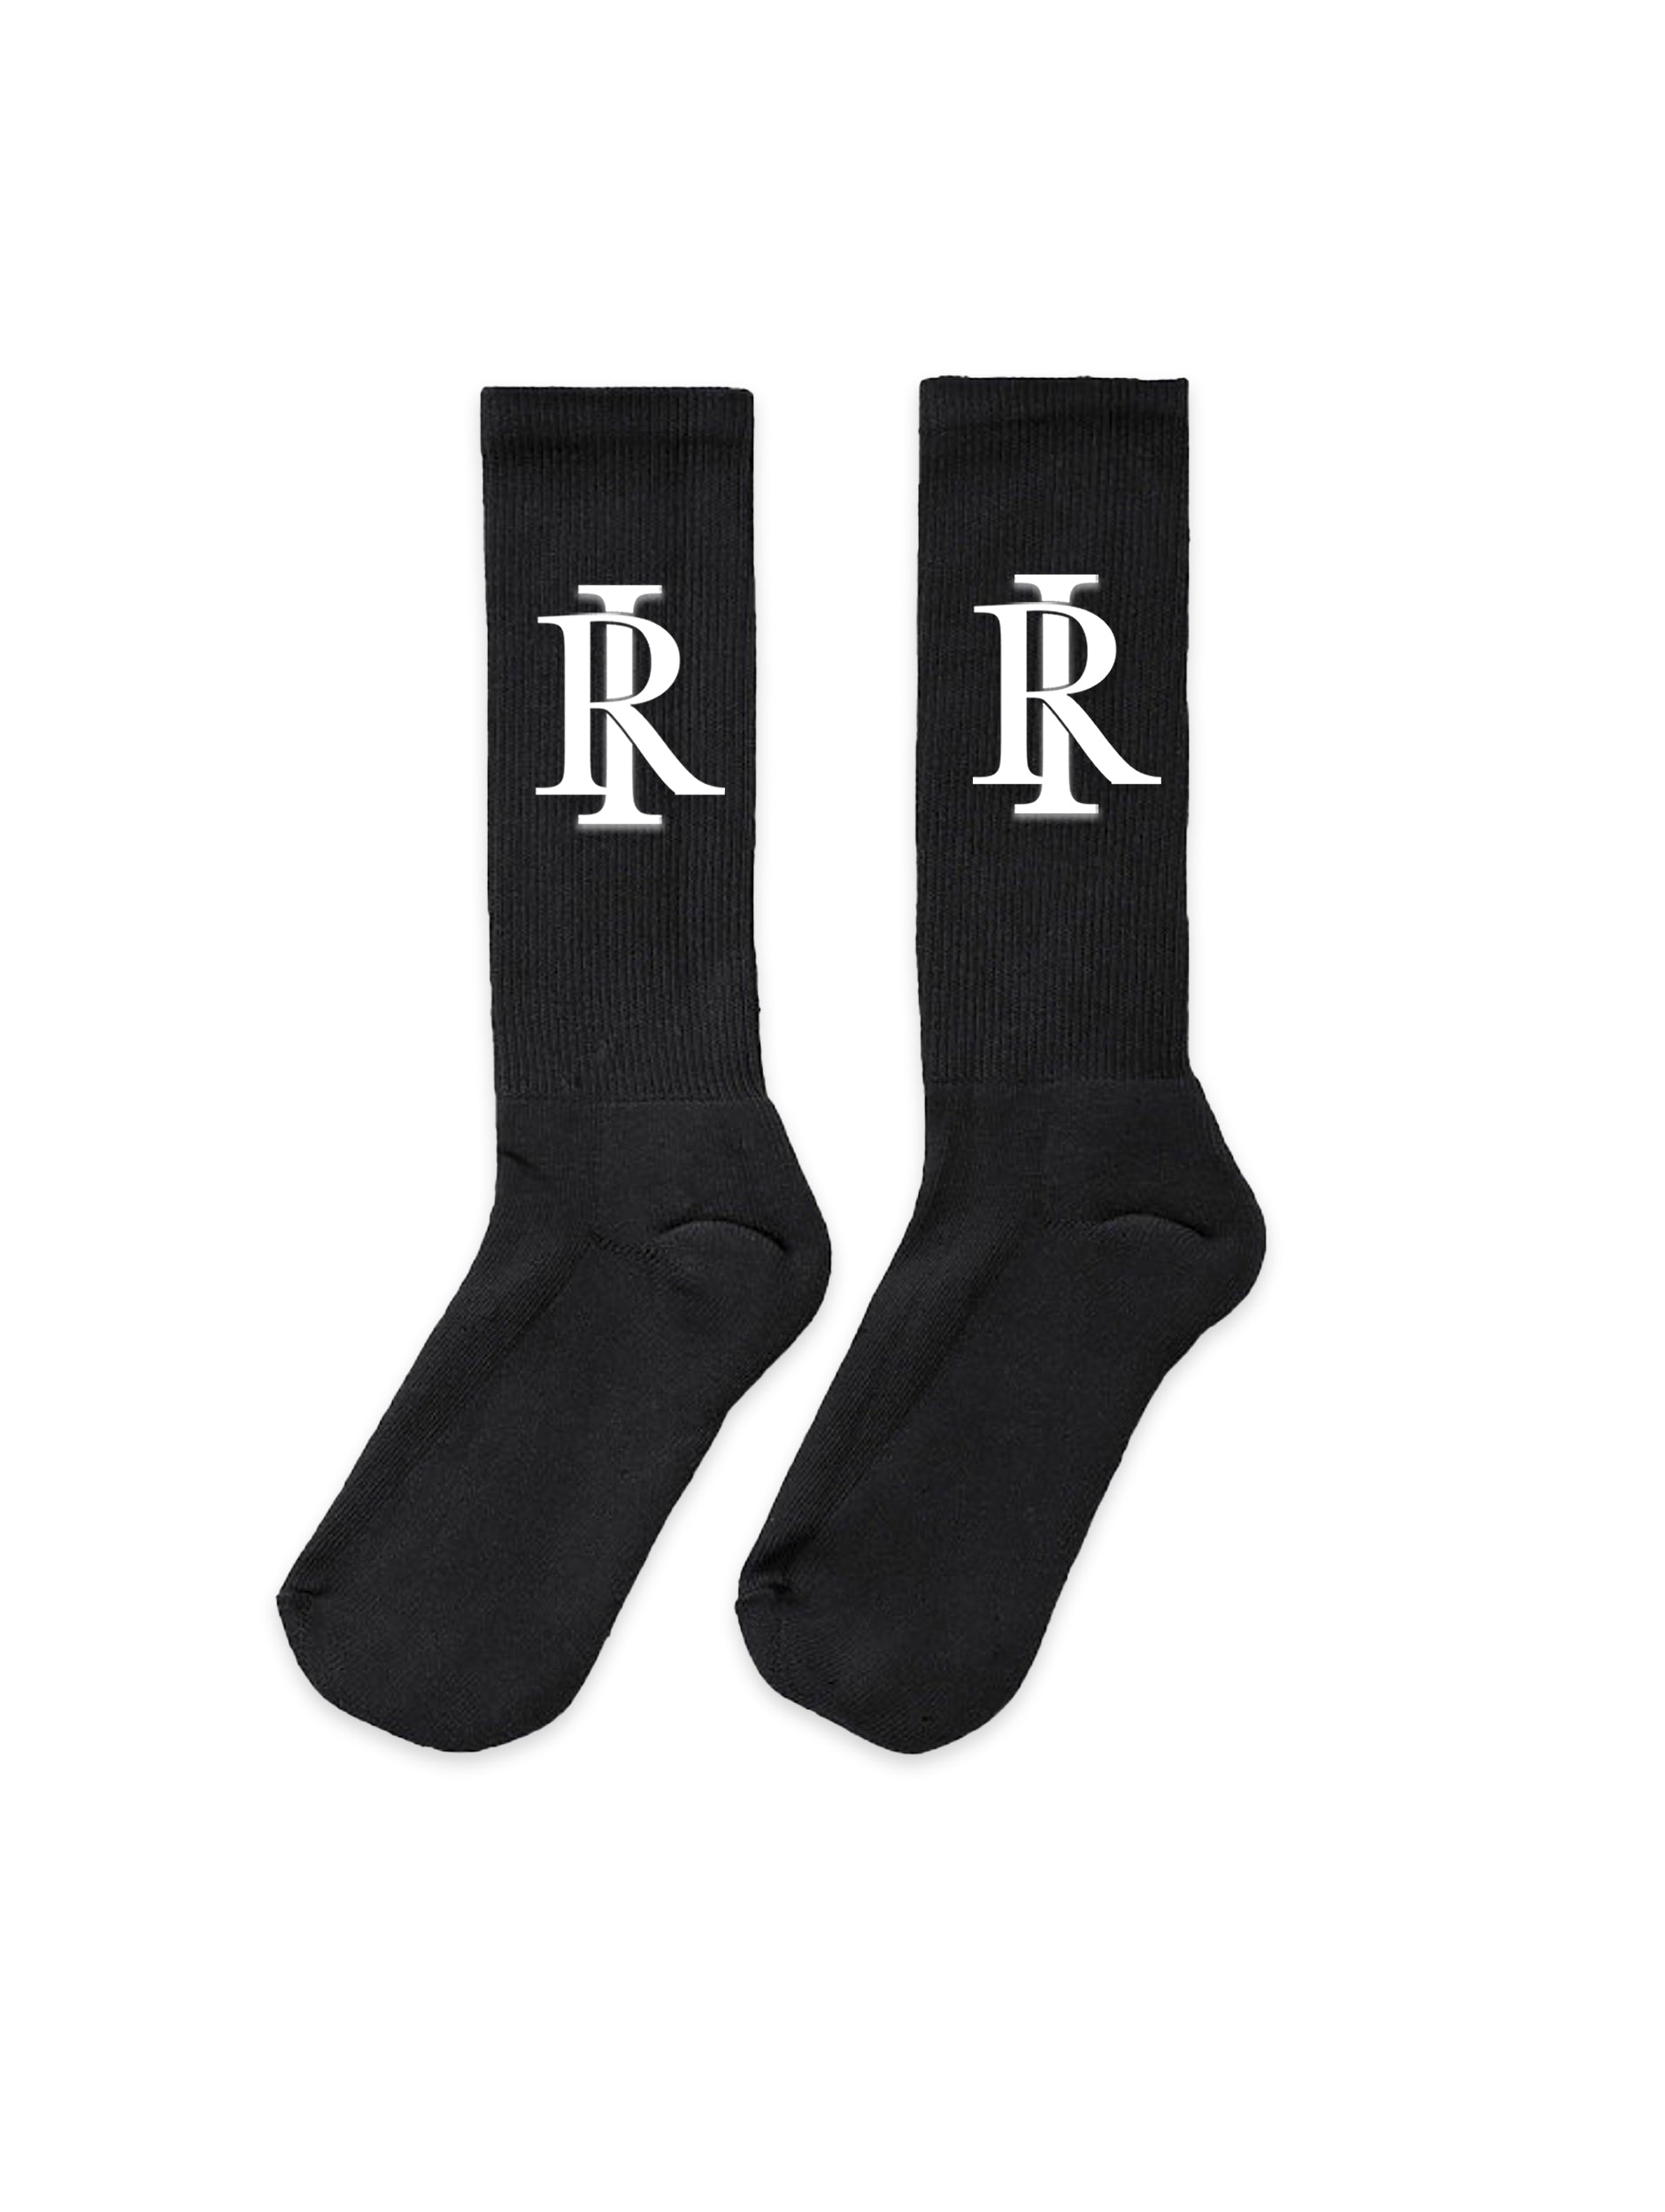 Monogram Socks - Black & White